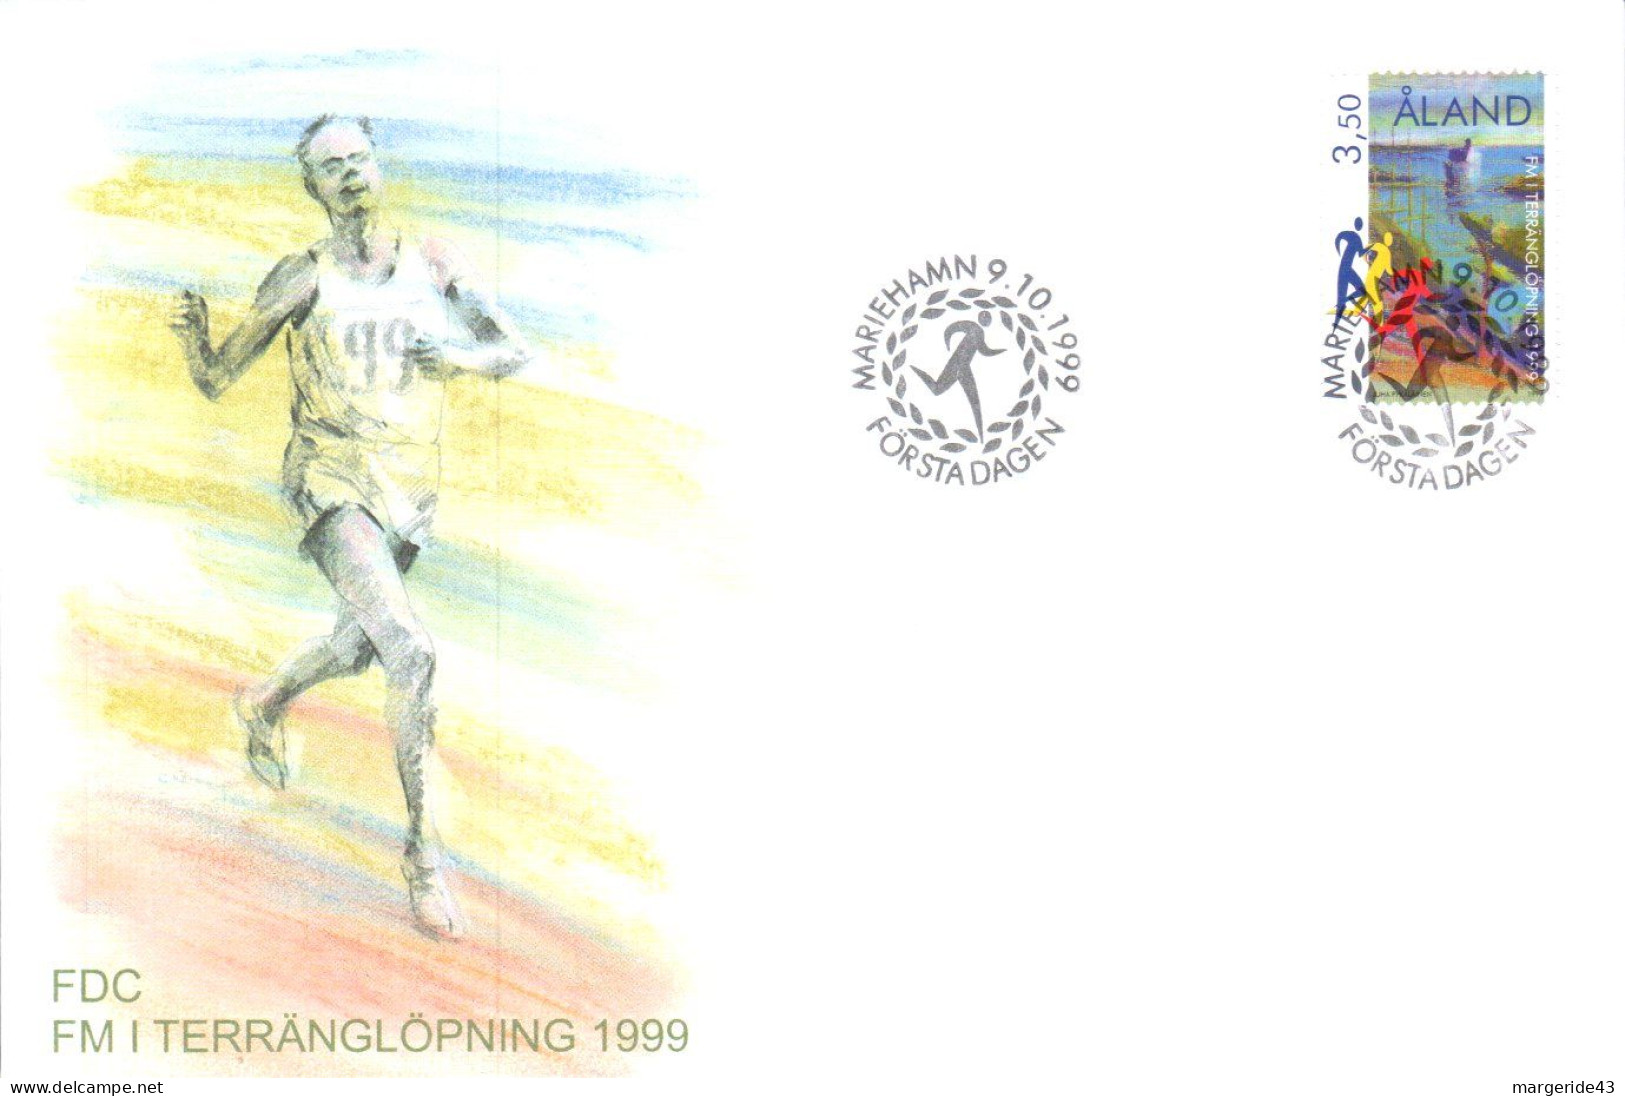 ALAND FDC 1999 CHAMPIONNTS FINLANDAIS DE CROSS COUNTRY - Ålandinseln